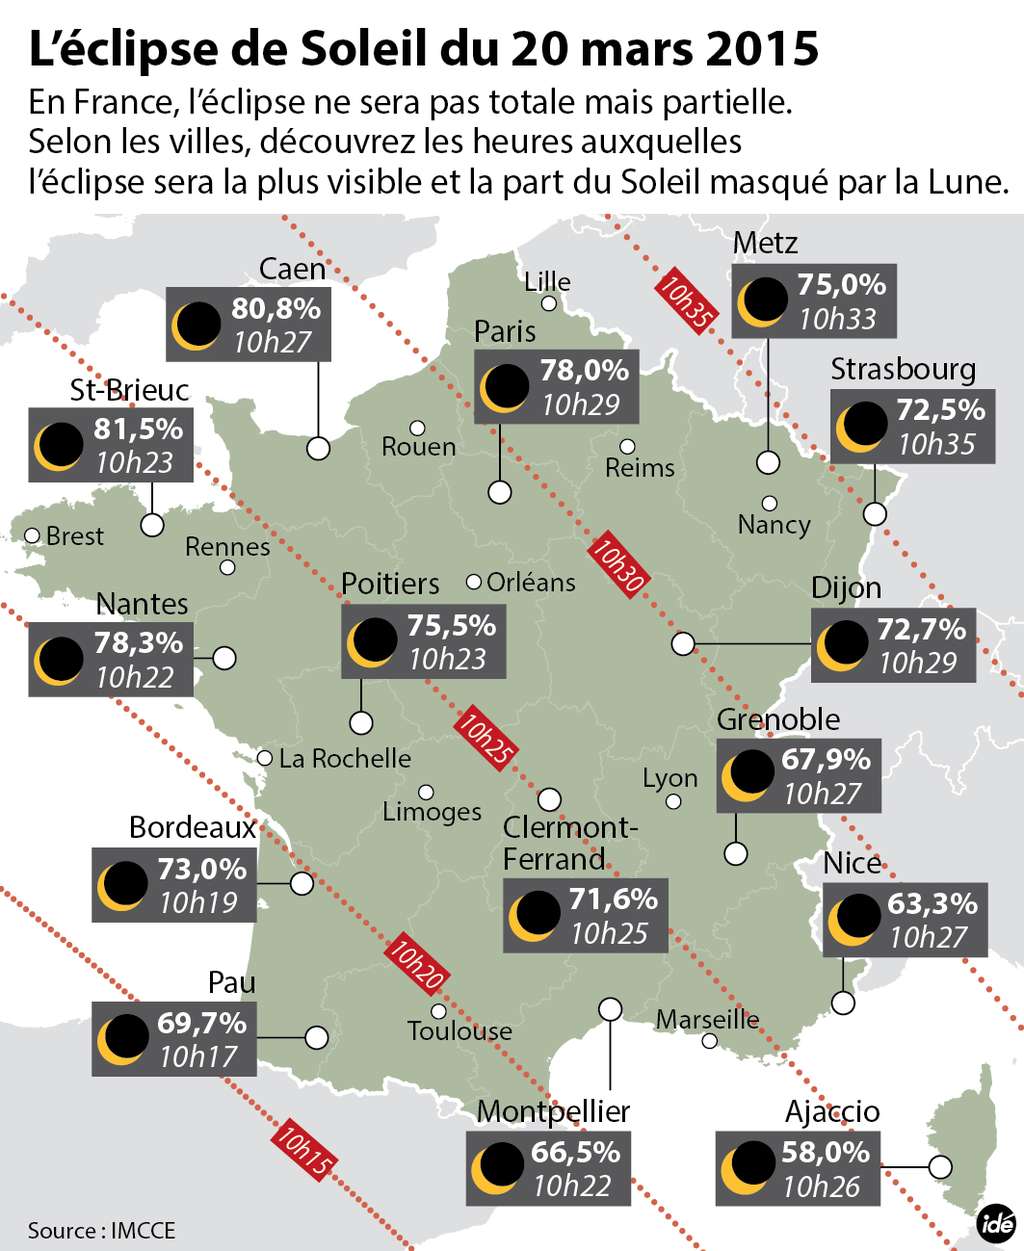 Les horaires (en heure française) du maximum de l’éclipse partielle de Soleil du 20 mars 2015 visible dans plusieurs grandes villes de France métropolitaine ainsi que le pourcentage d’occultation. © Idé